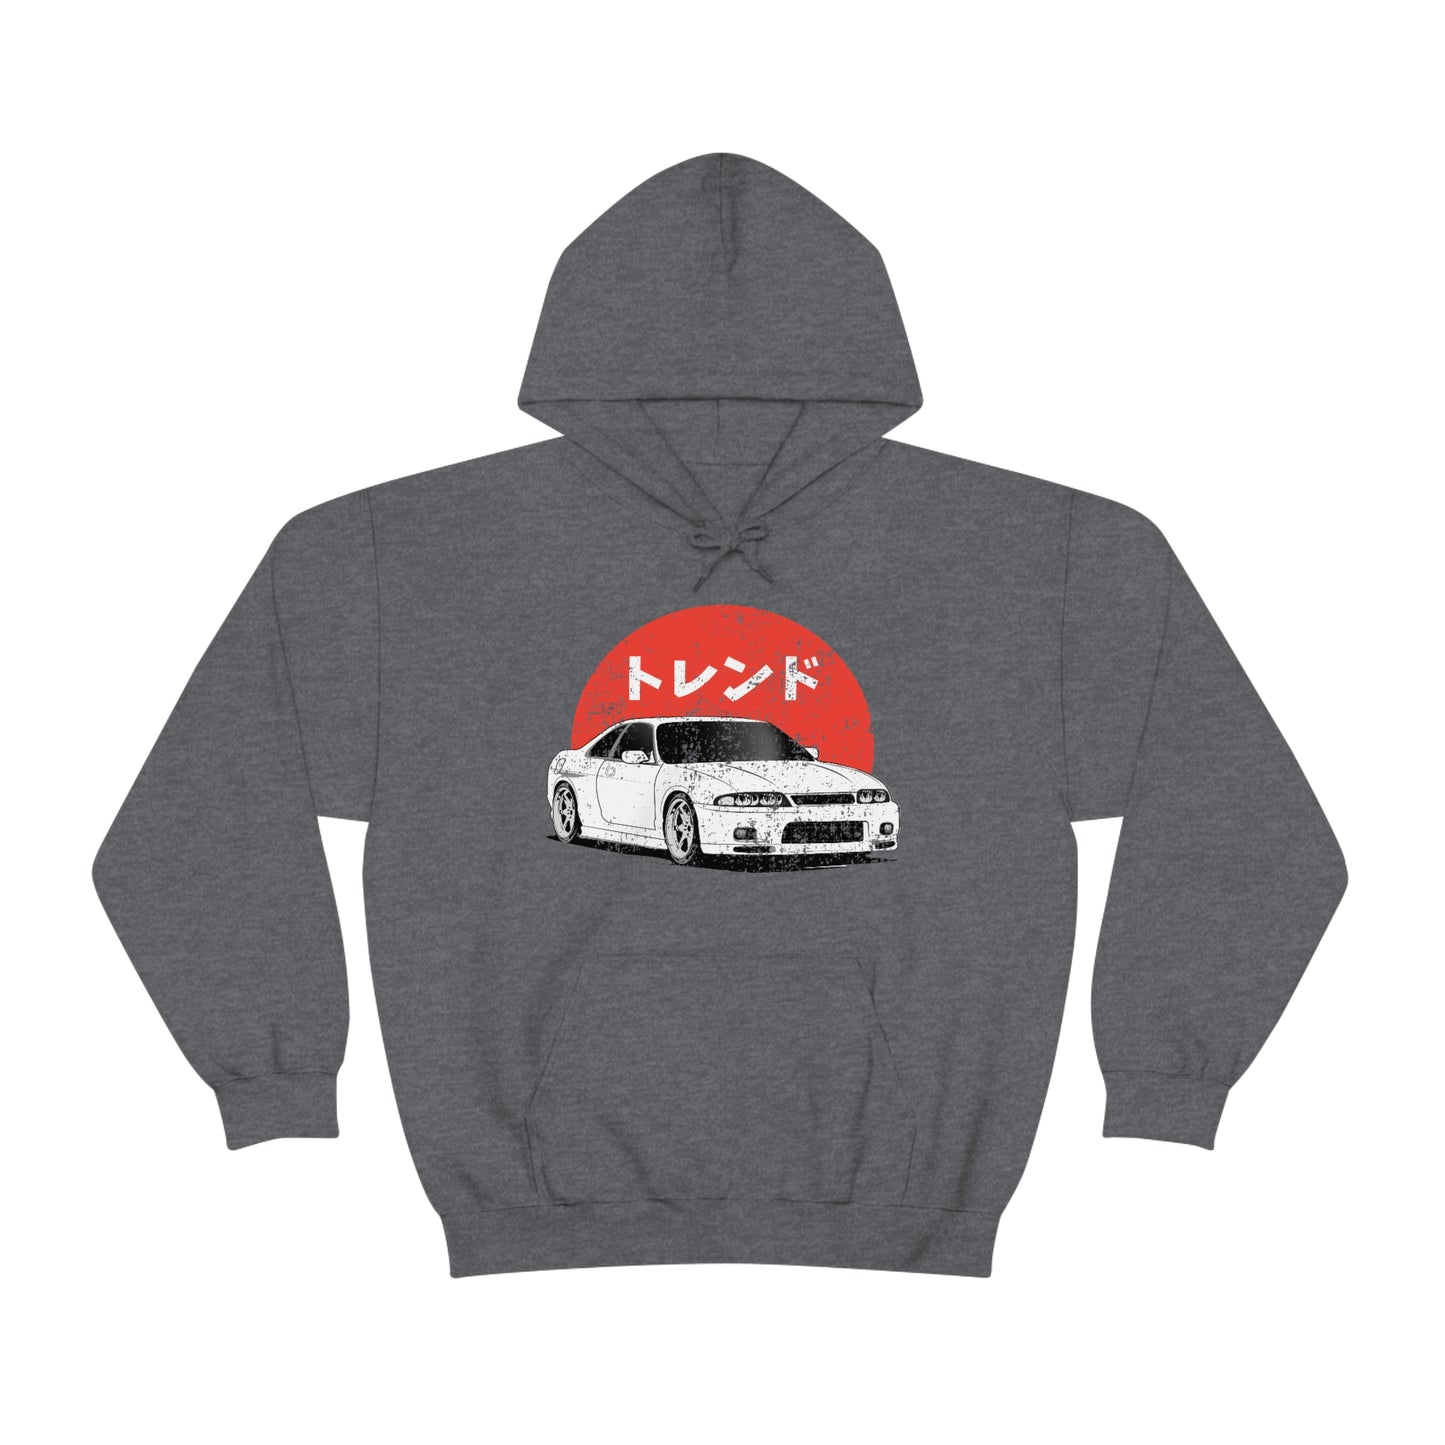 Japanese JDM Car Hoodie Anime Initial Hoodies Mazda RX7 Streetwear Pullover